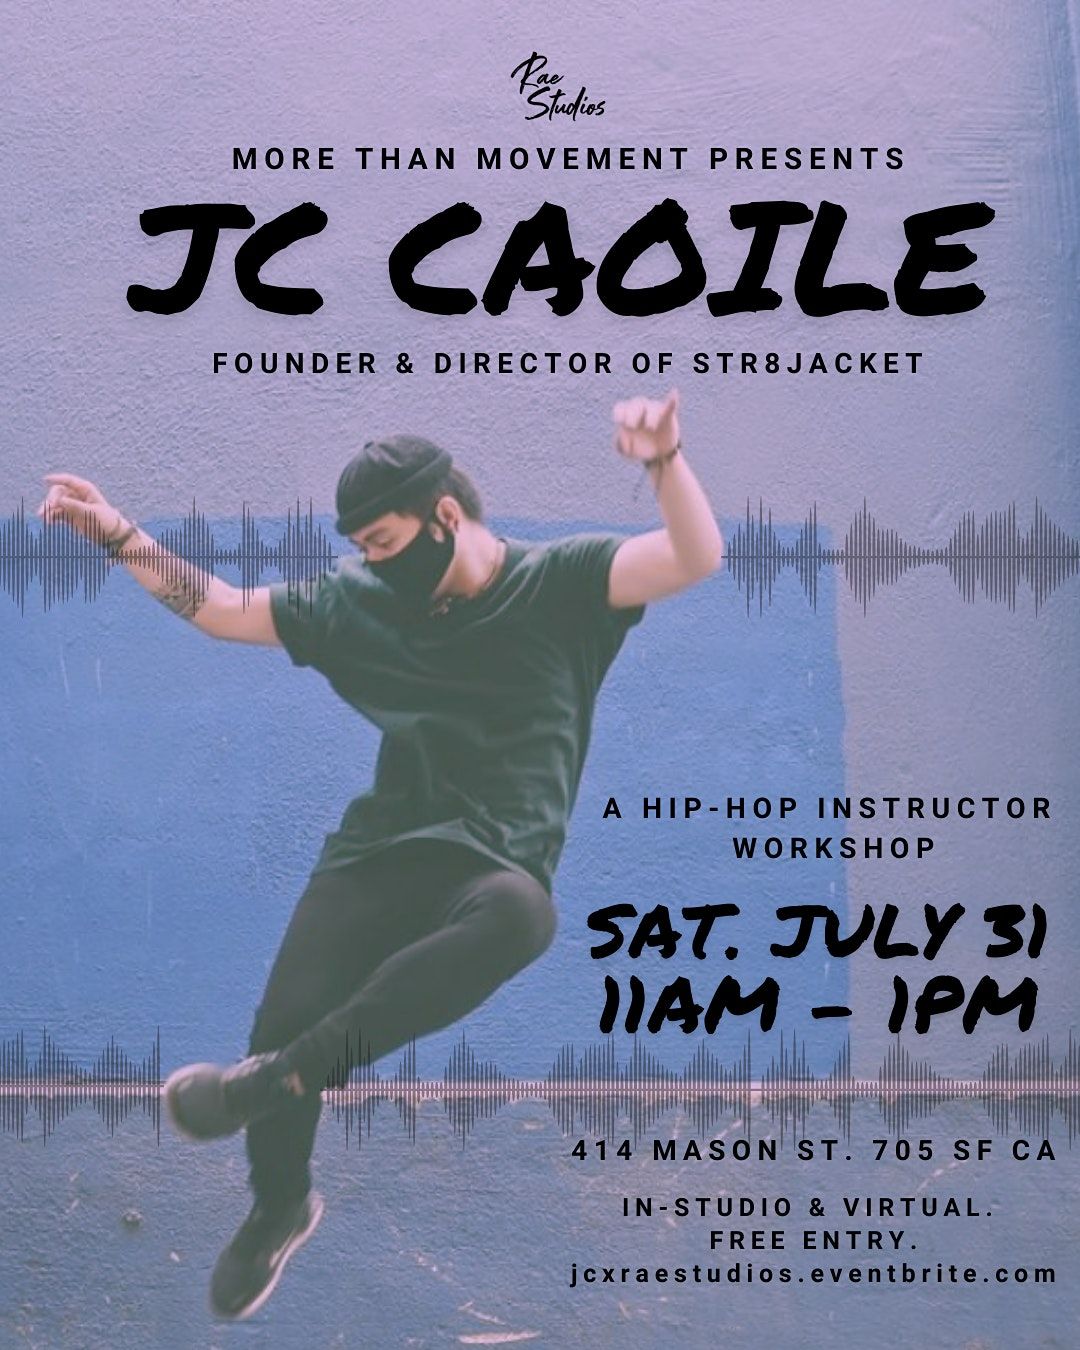 Hip-Hop Instructor Workshop w\/ JC Caoile of Str8Jacket | Rae Studios